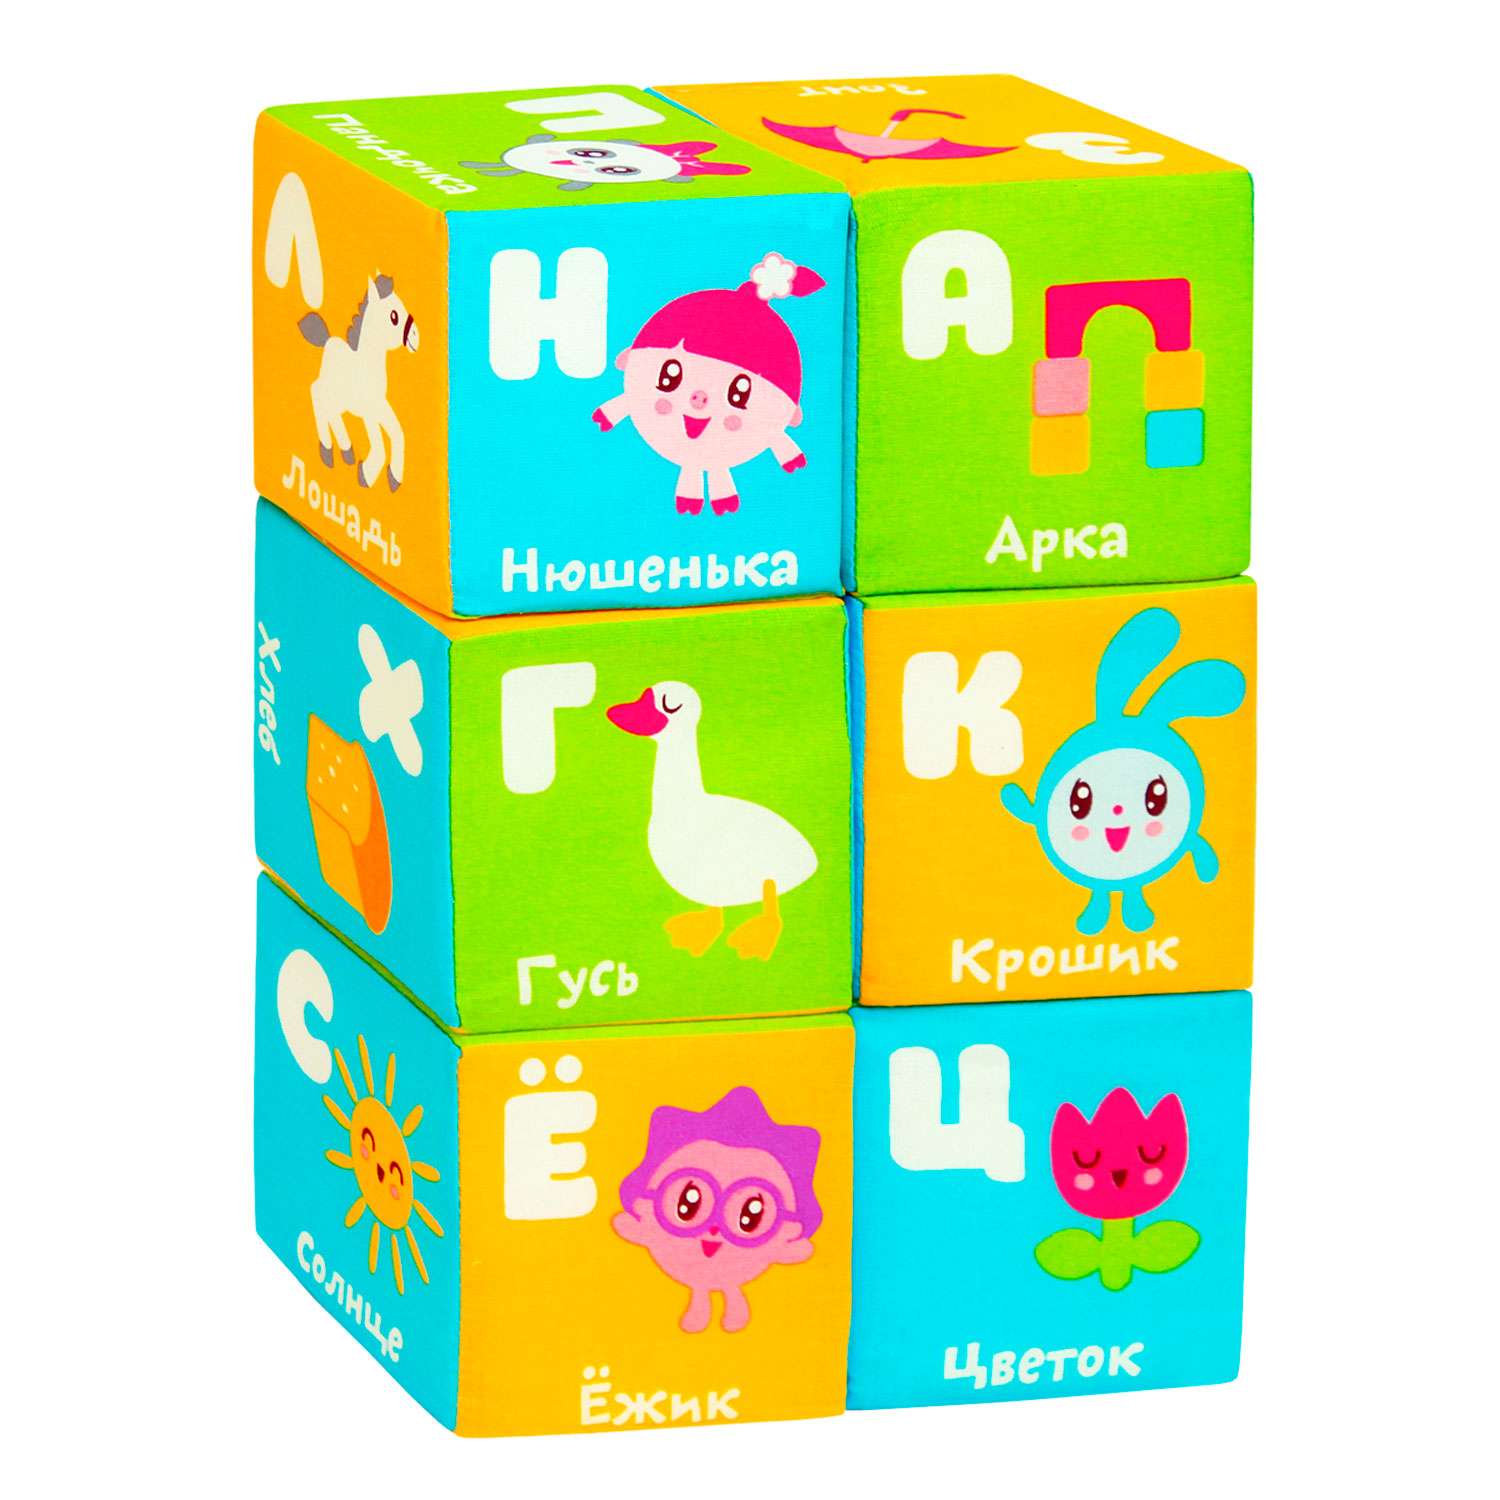 Игрушки для детей дошкольного возраста: мягкие кубики